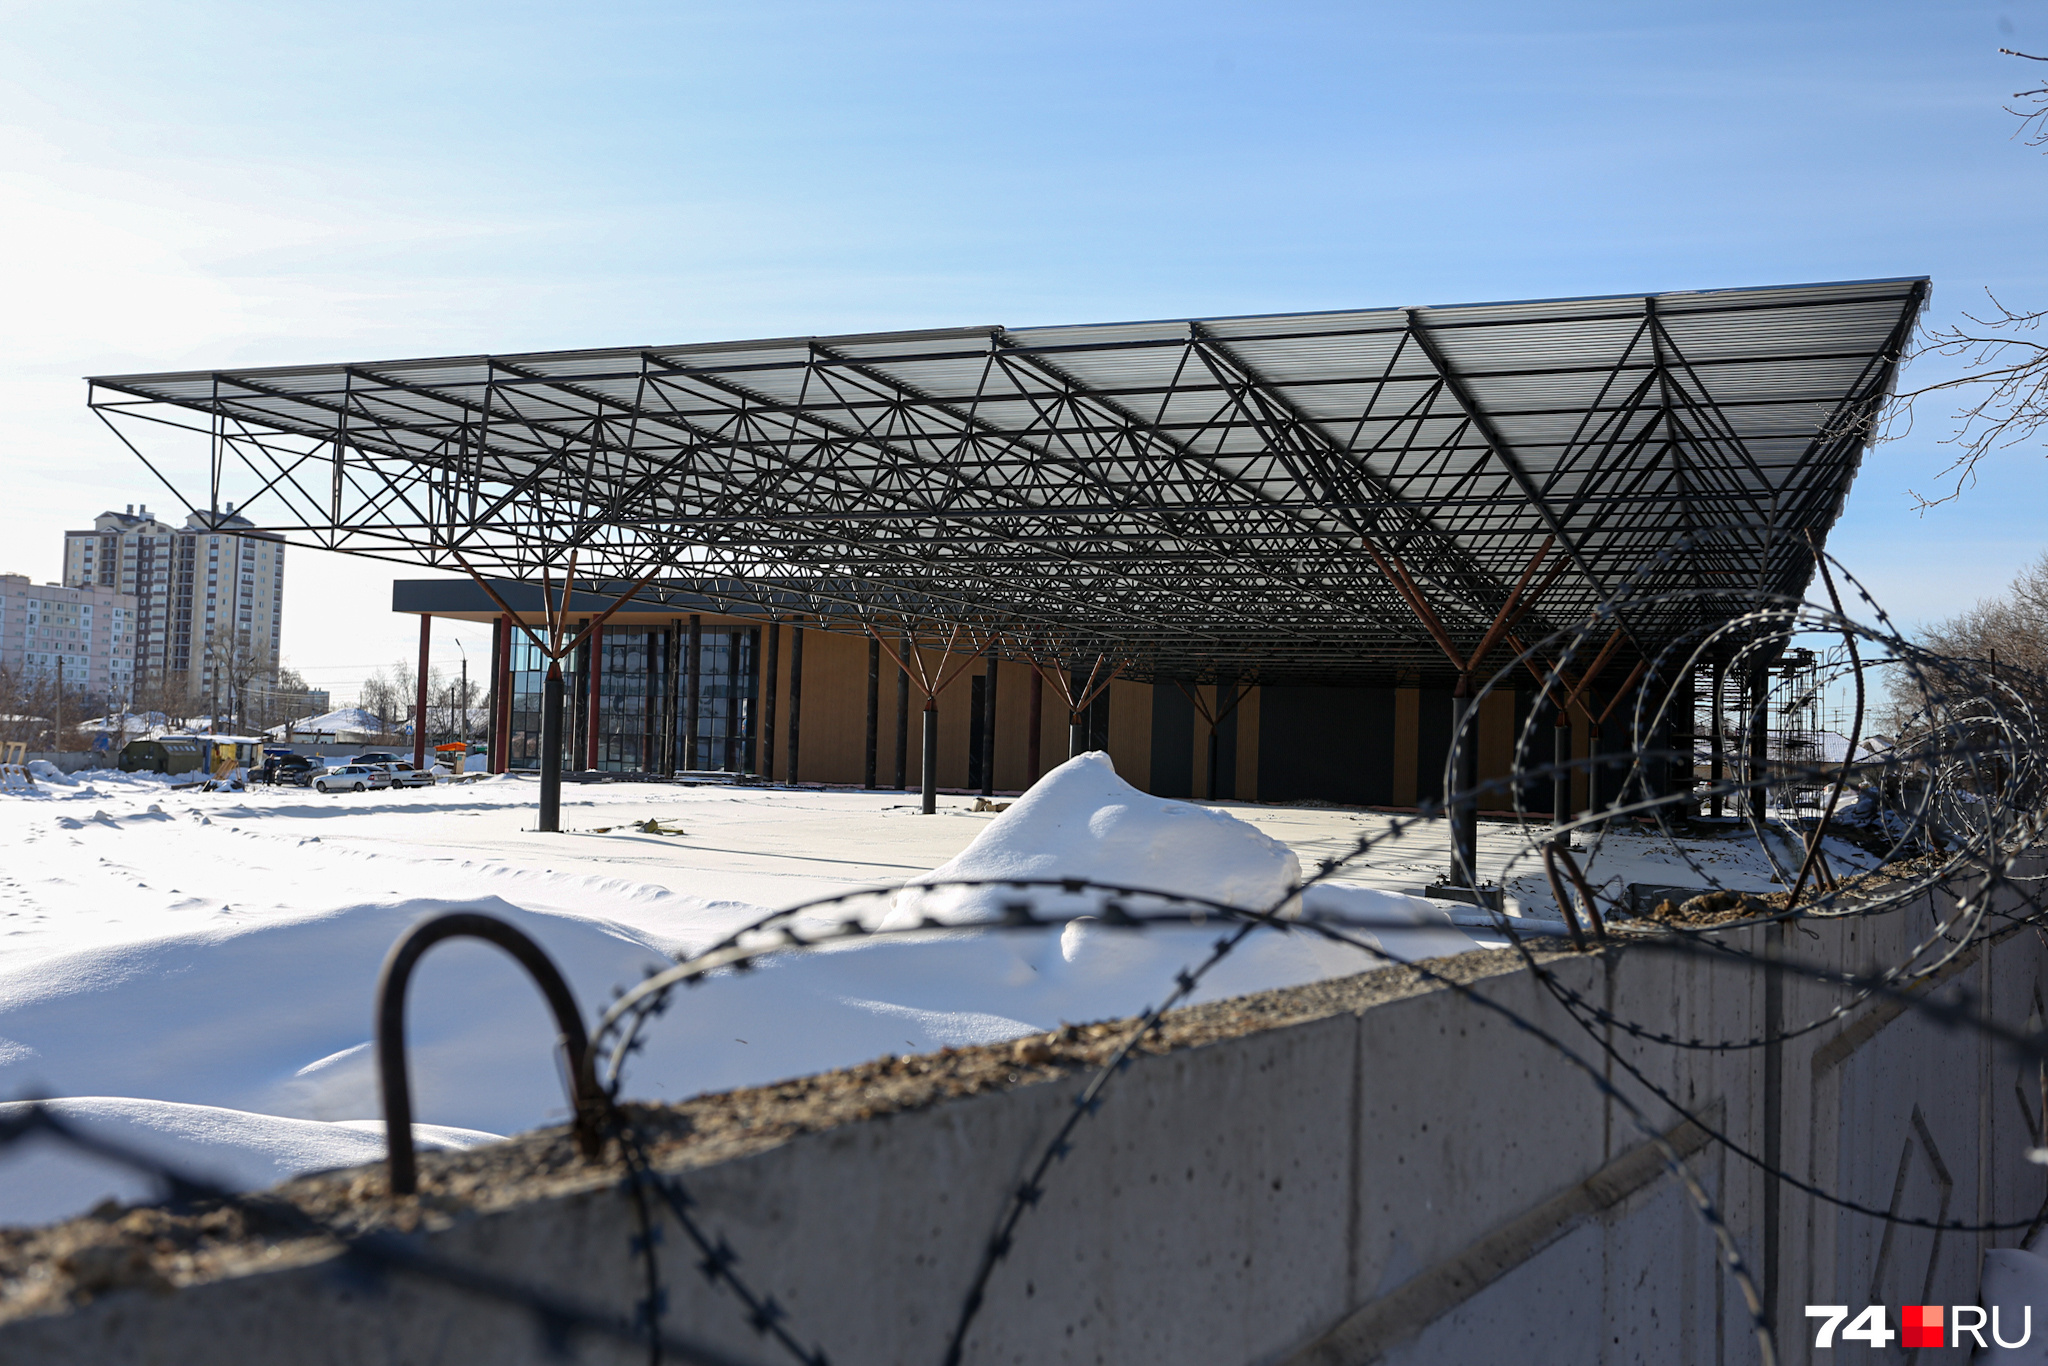 Здание будущего автовокзала находится уже в высокой степени готовности